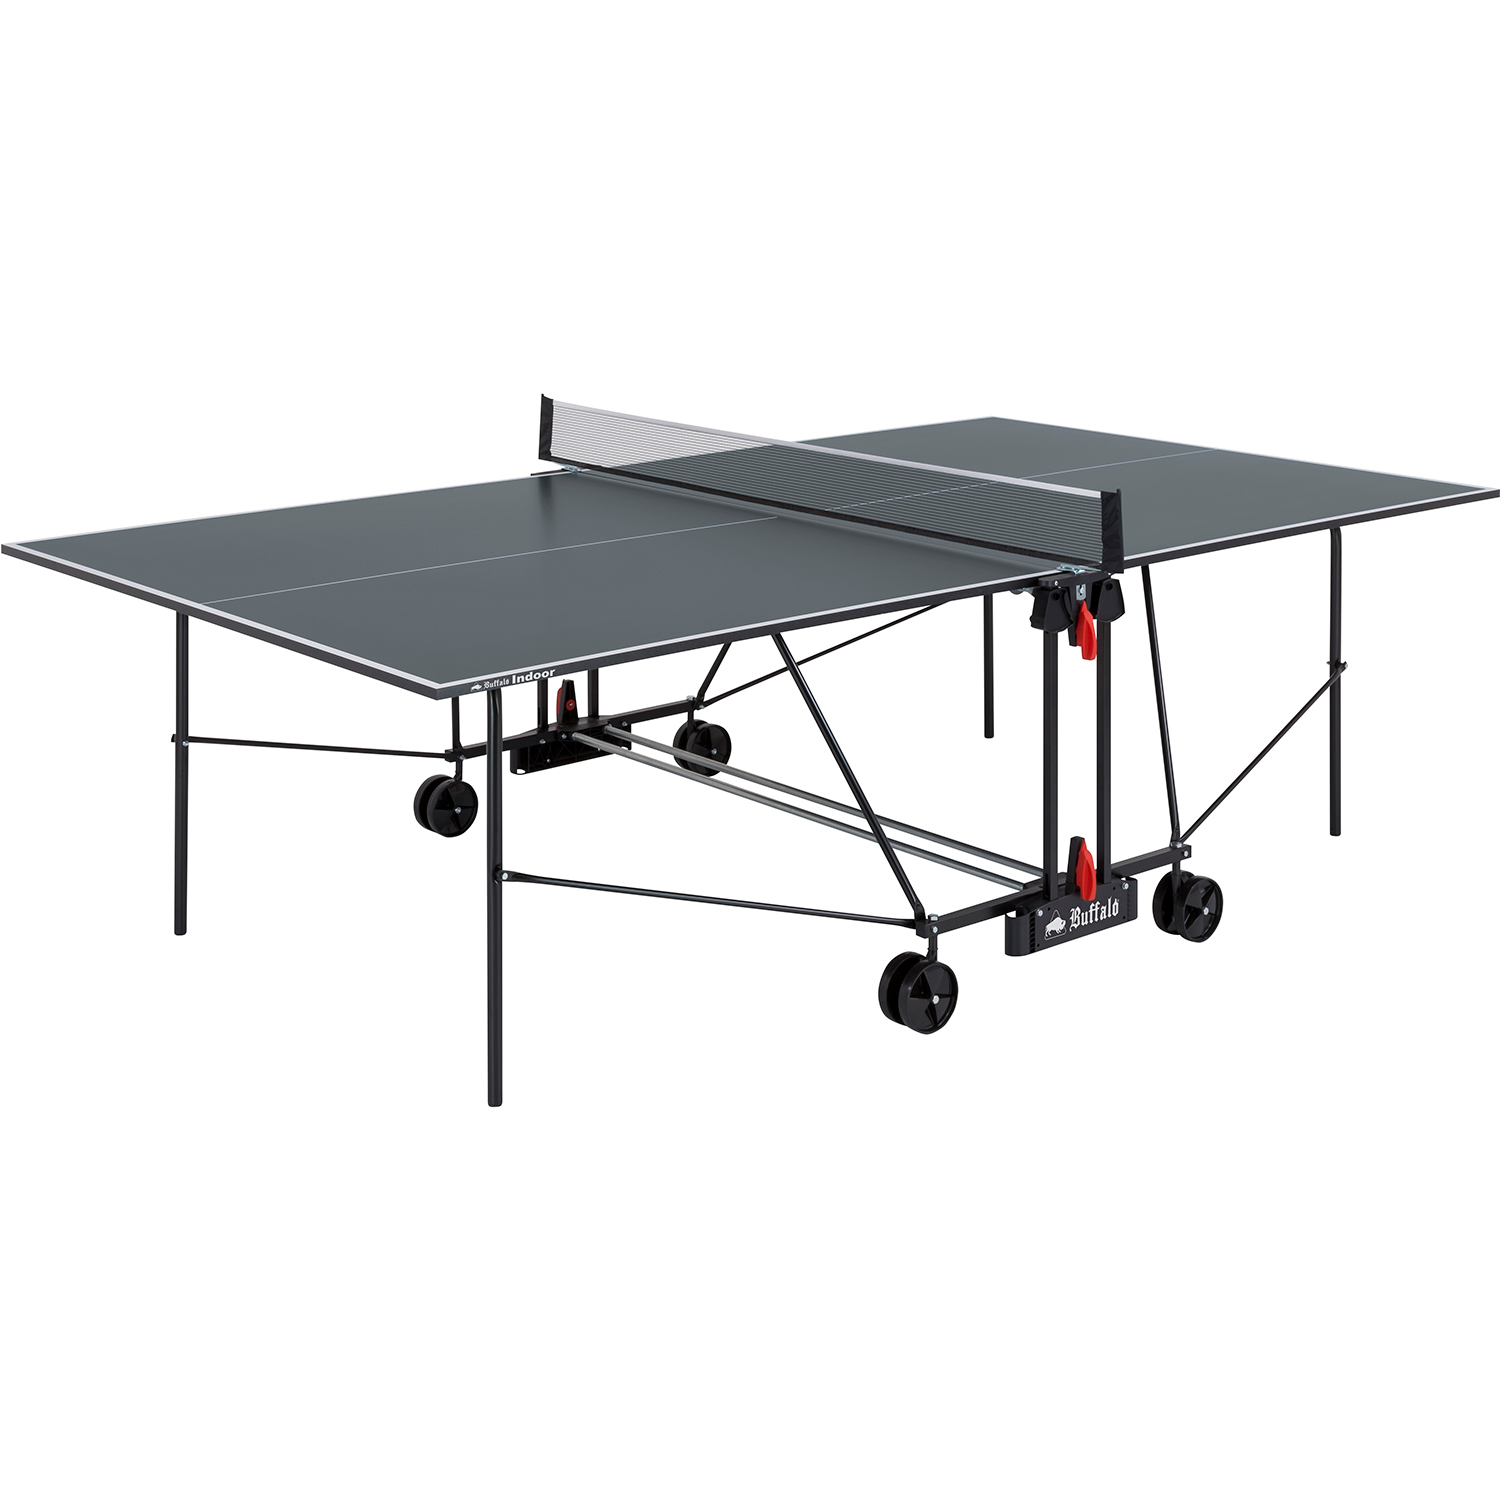 Buffalo Basic indoor table tennis table grey